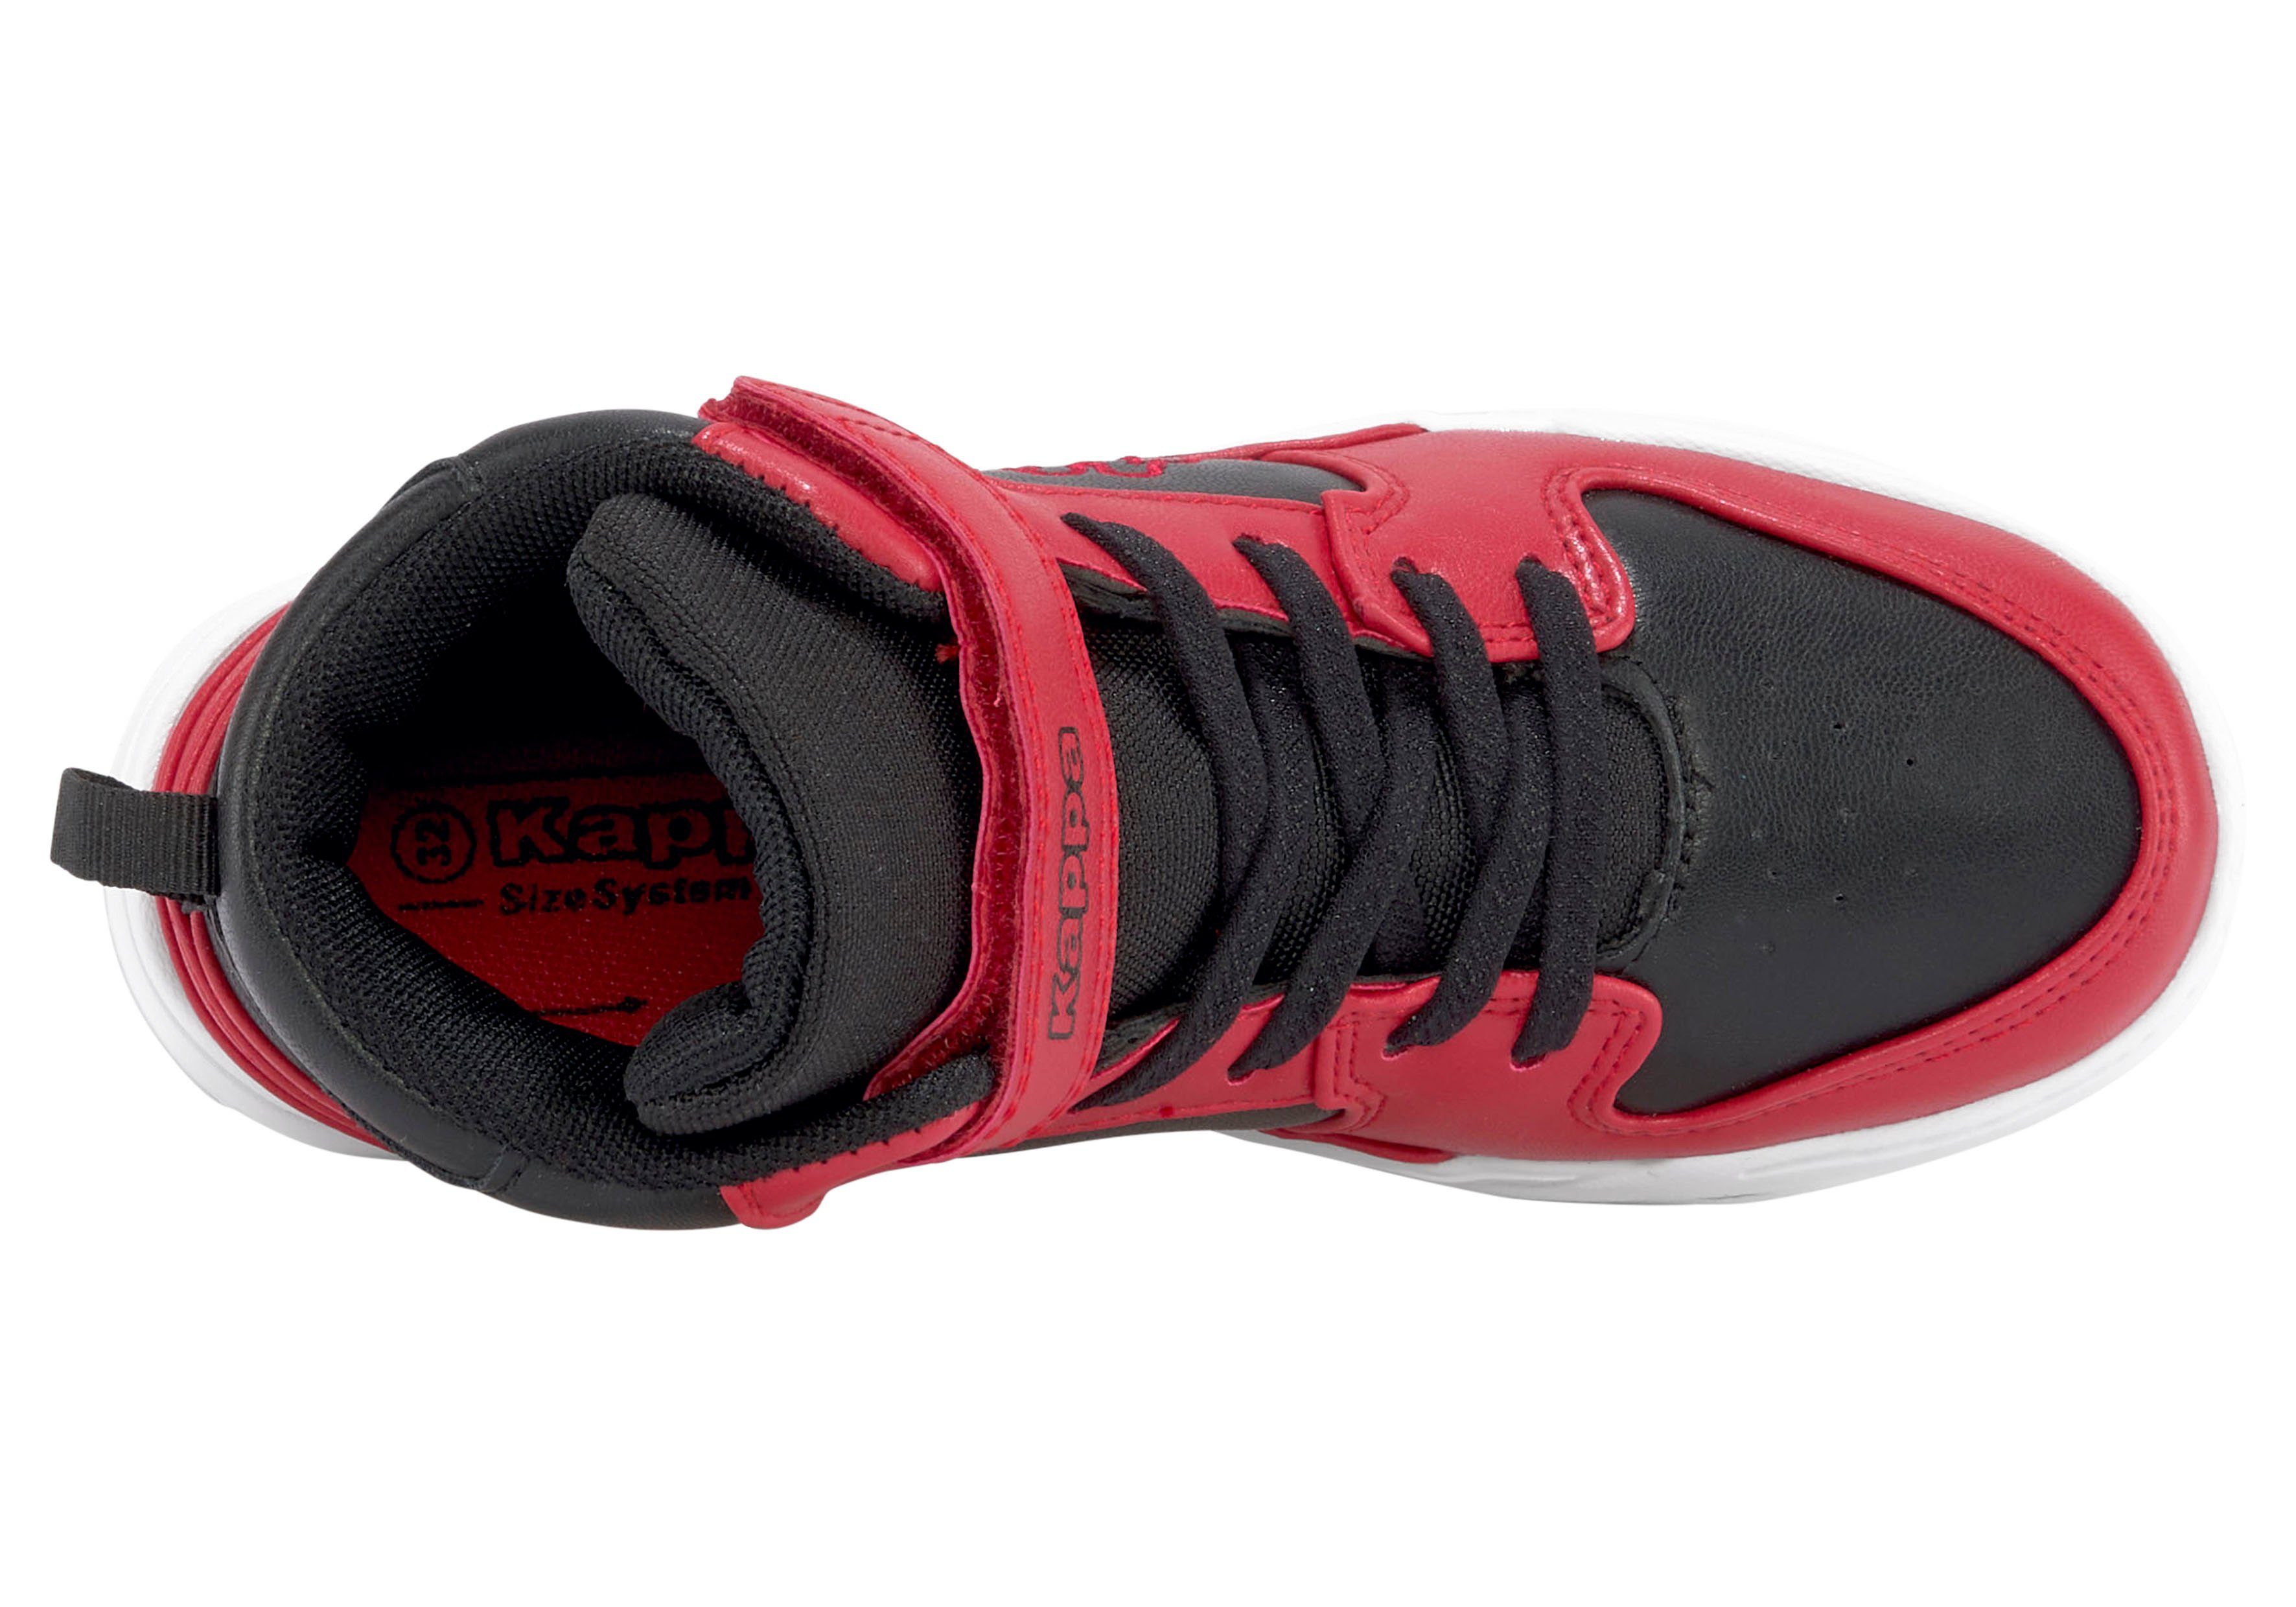 rot-schwarz Sneaker Kappa